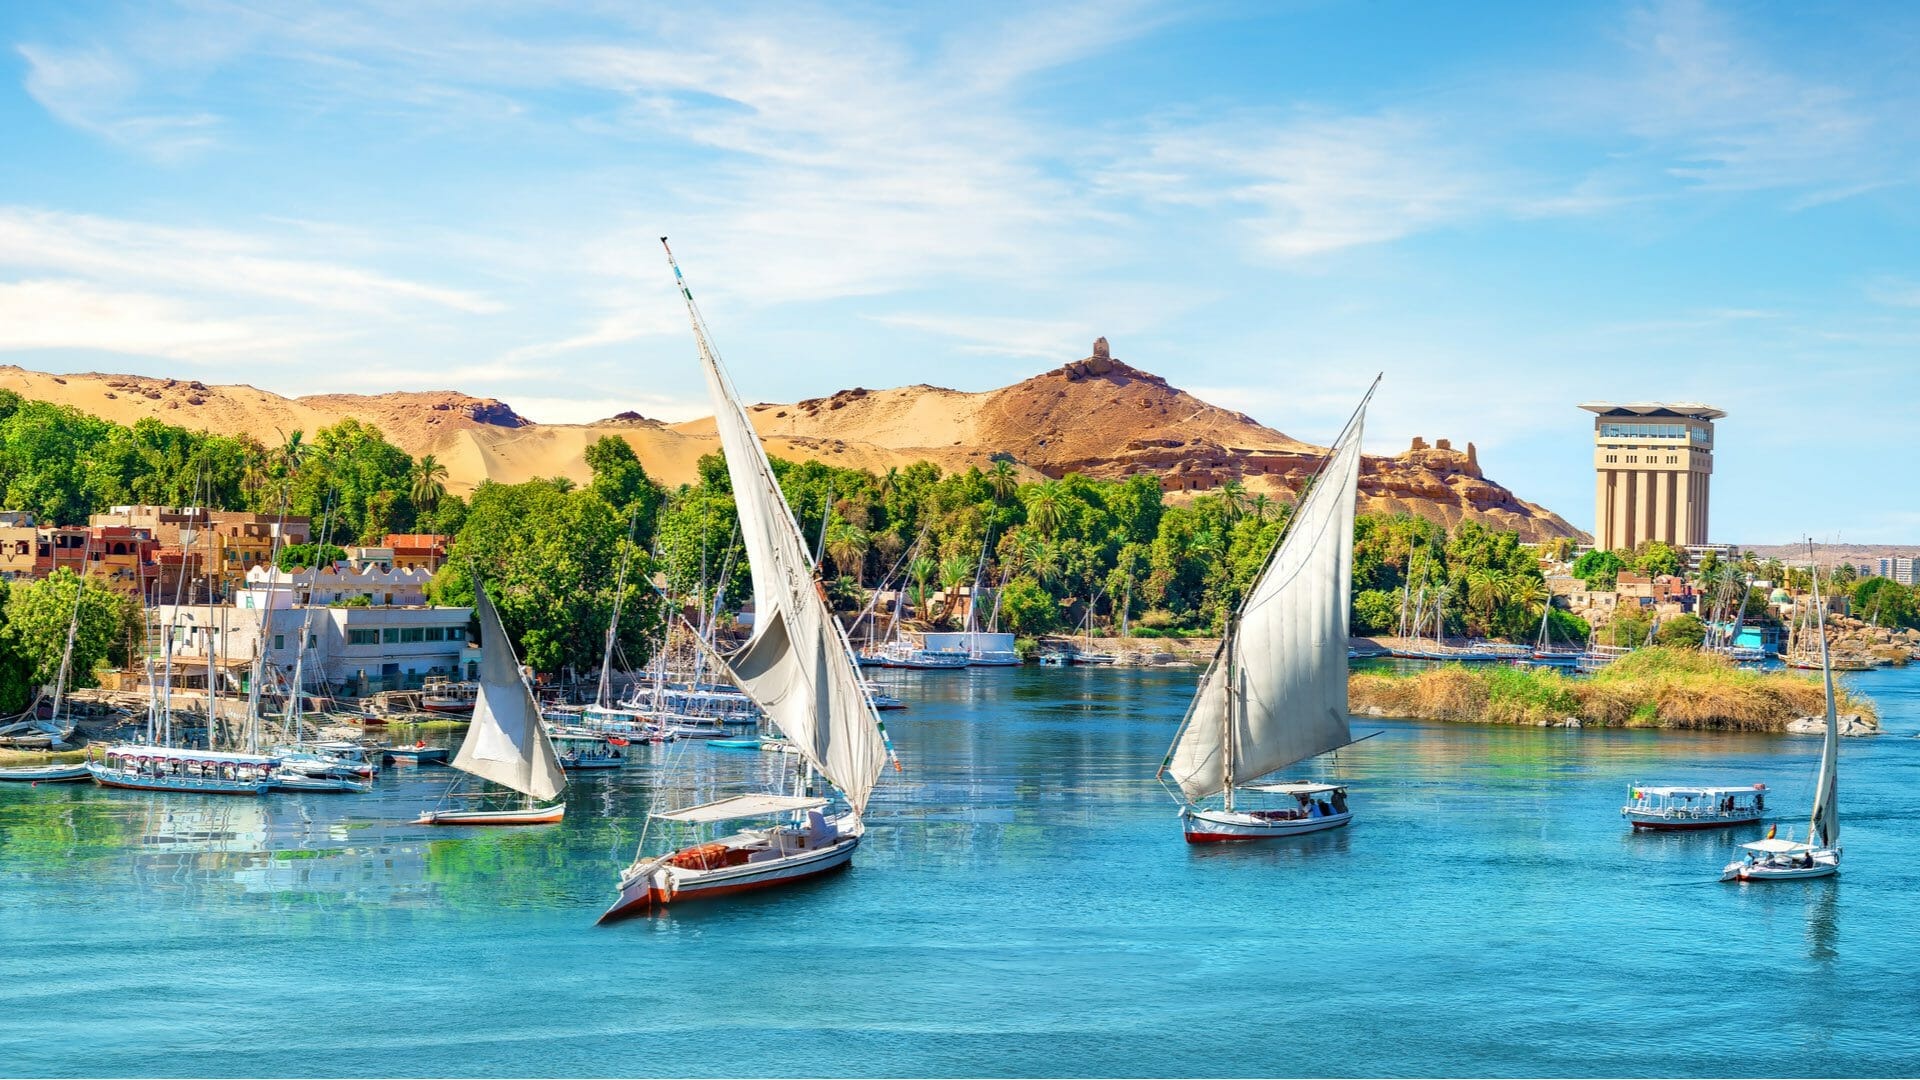 The Nile River, Aswan attractions, Cultural exploration, Memorable visit, 1920x1080 Full HD Desktop